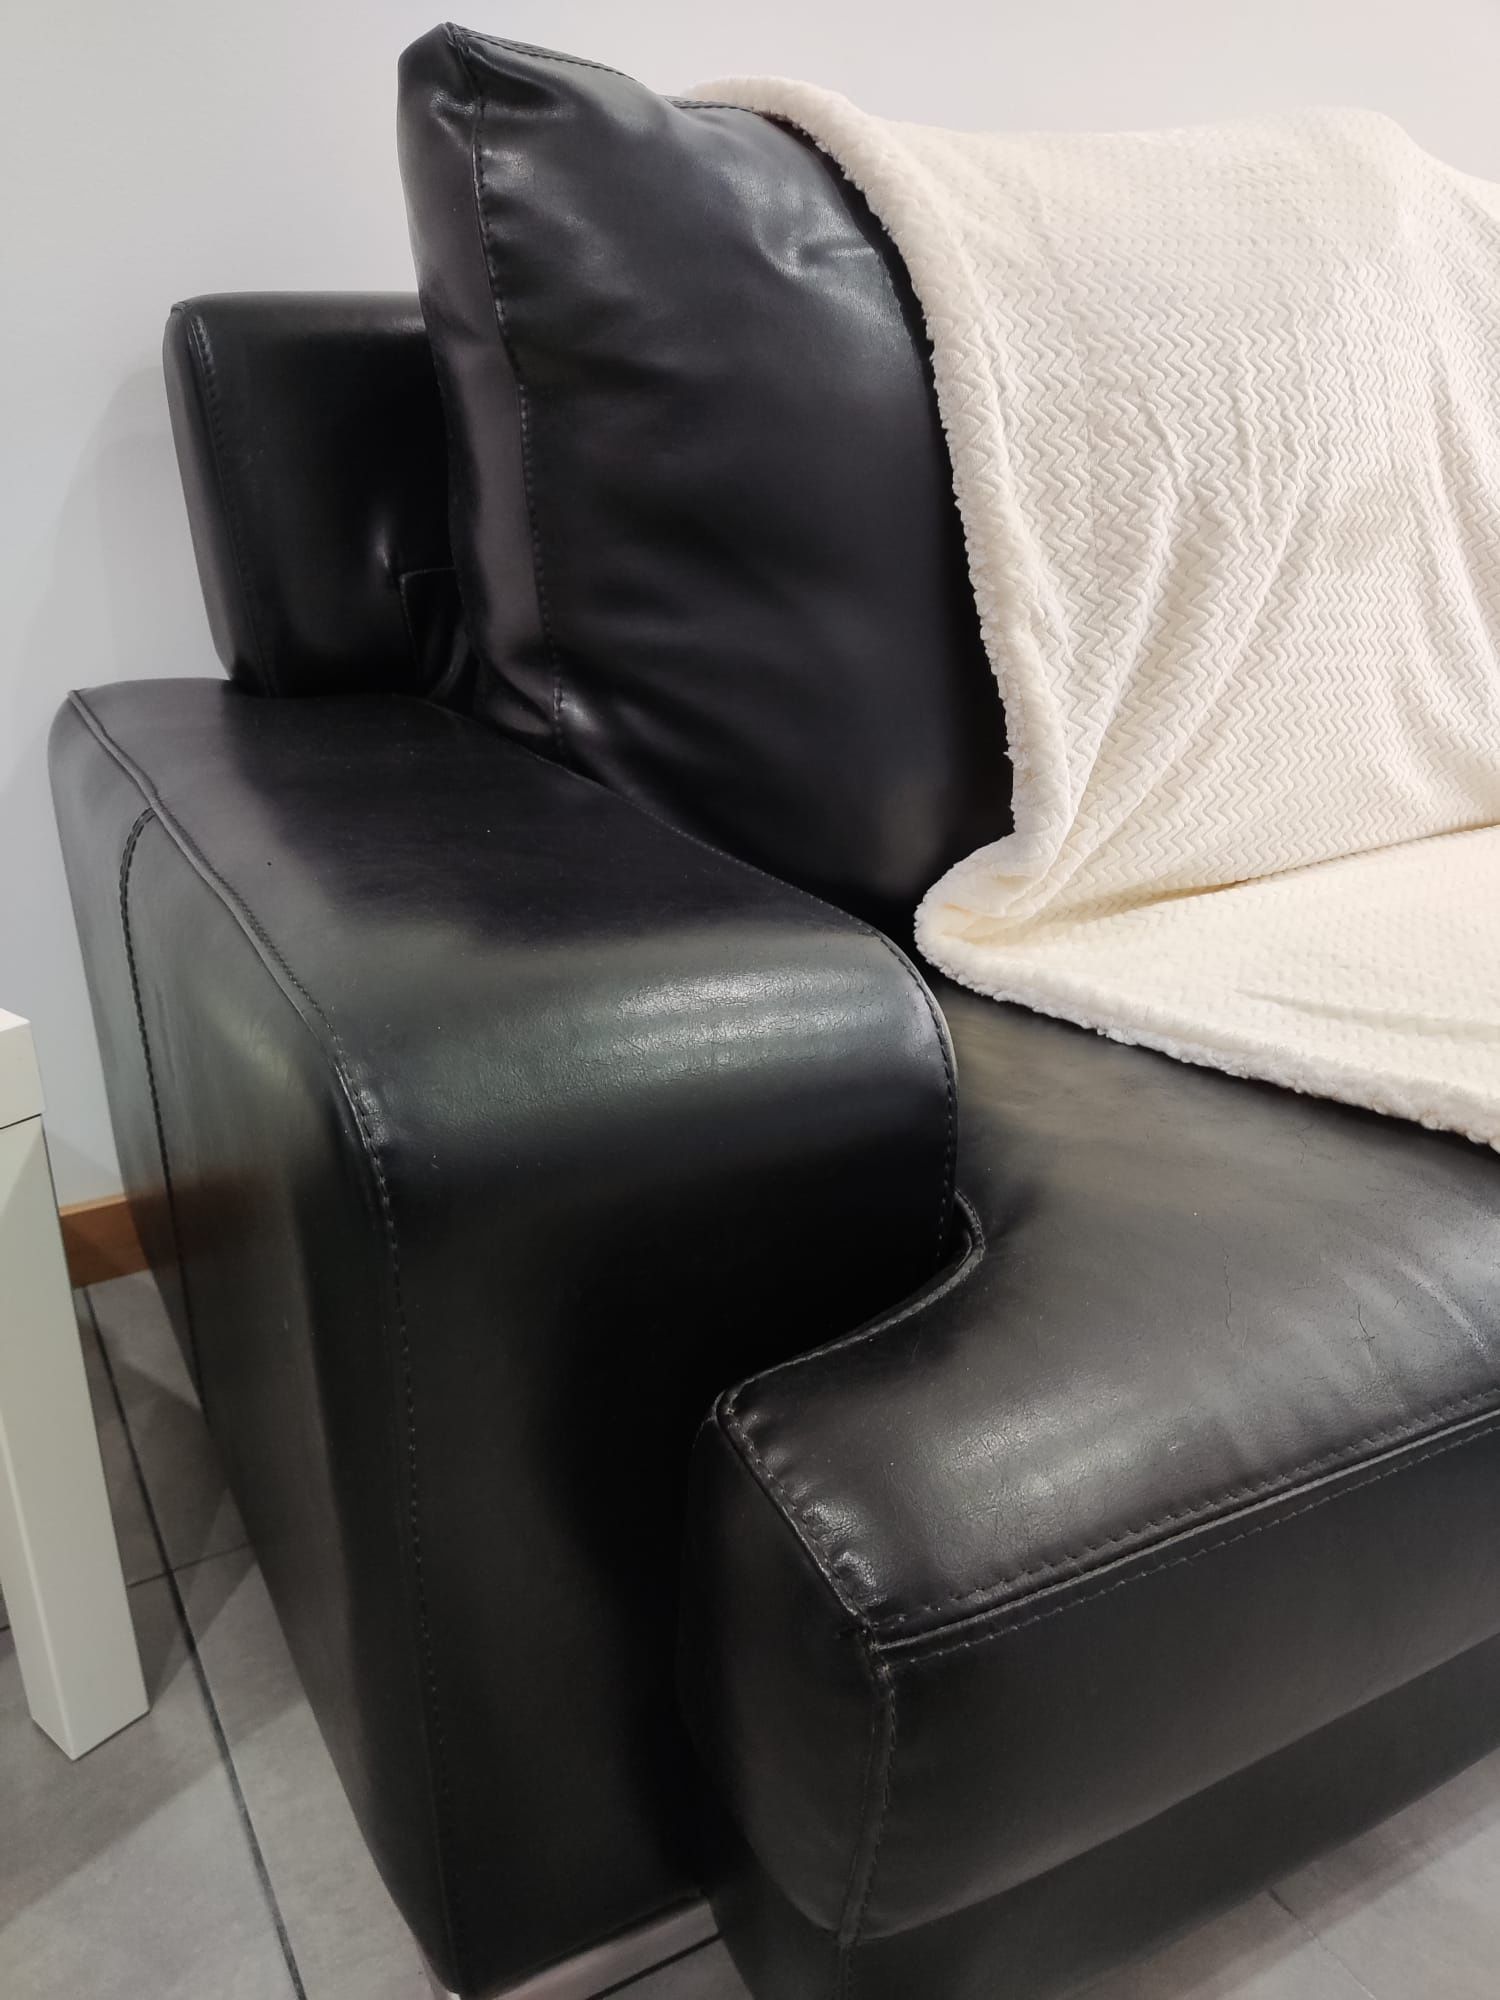 sofa com chaise longue